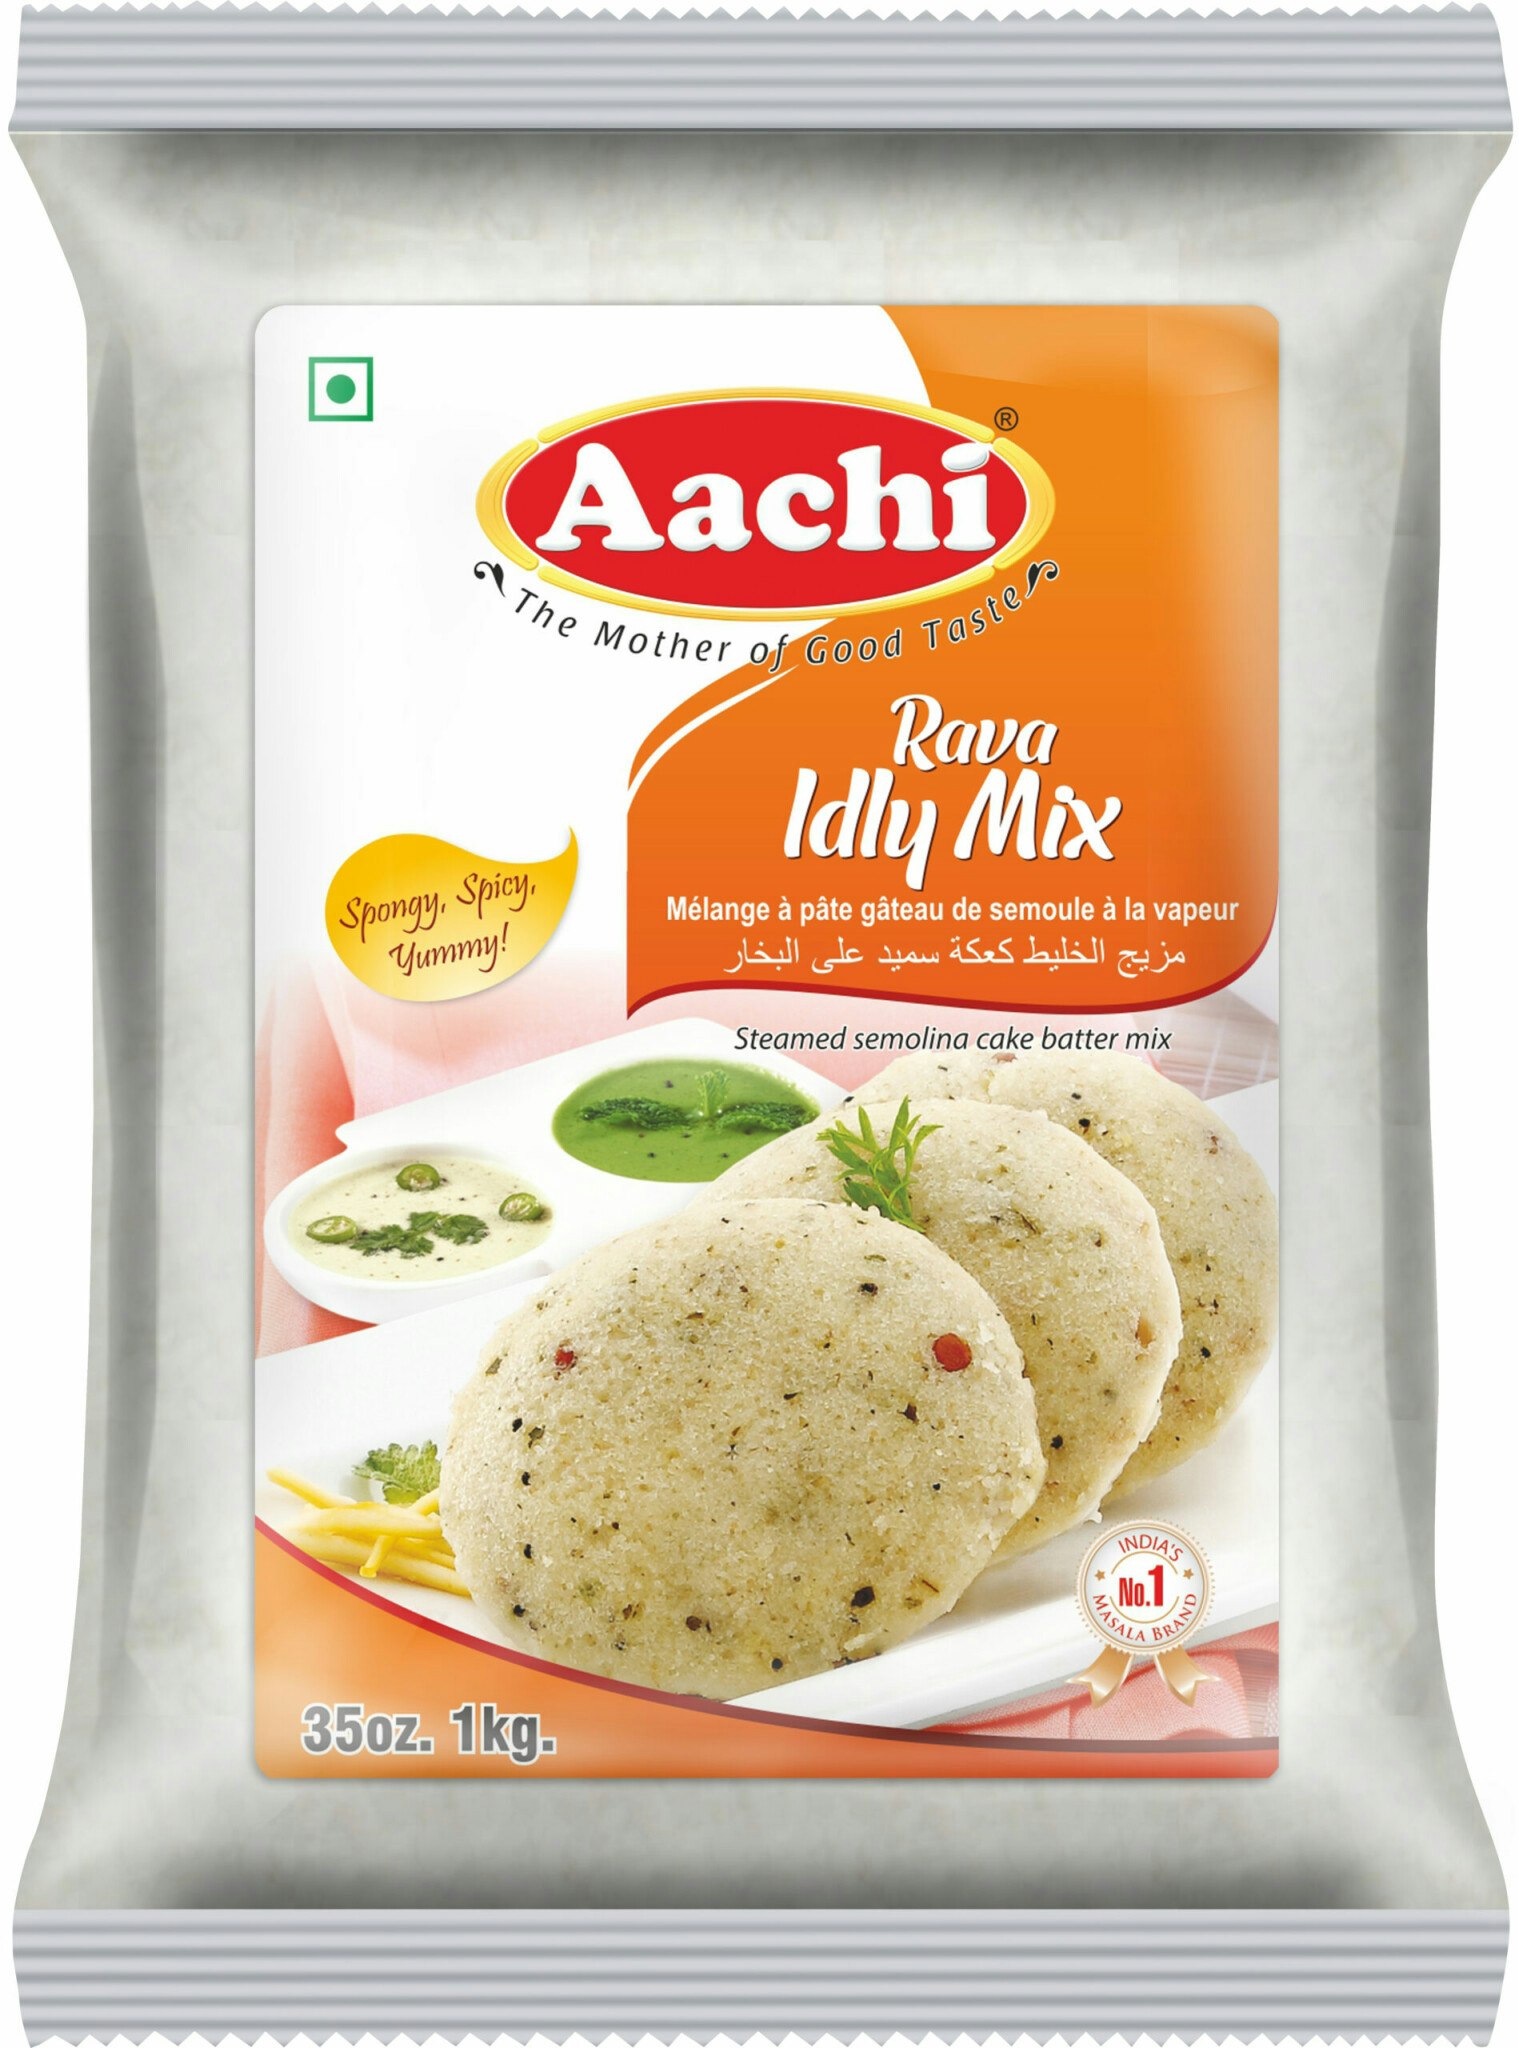 Rava Idly Mix (Aachi) - 500g